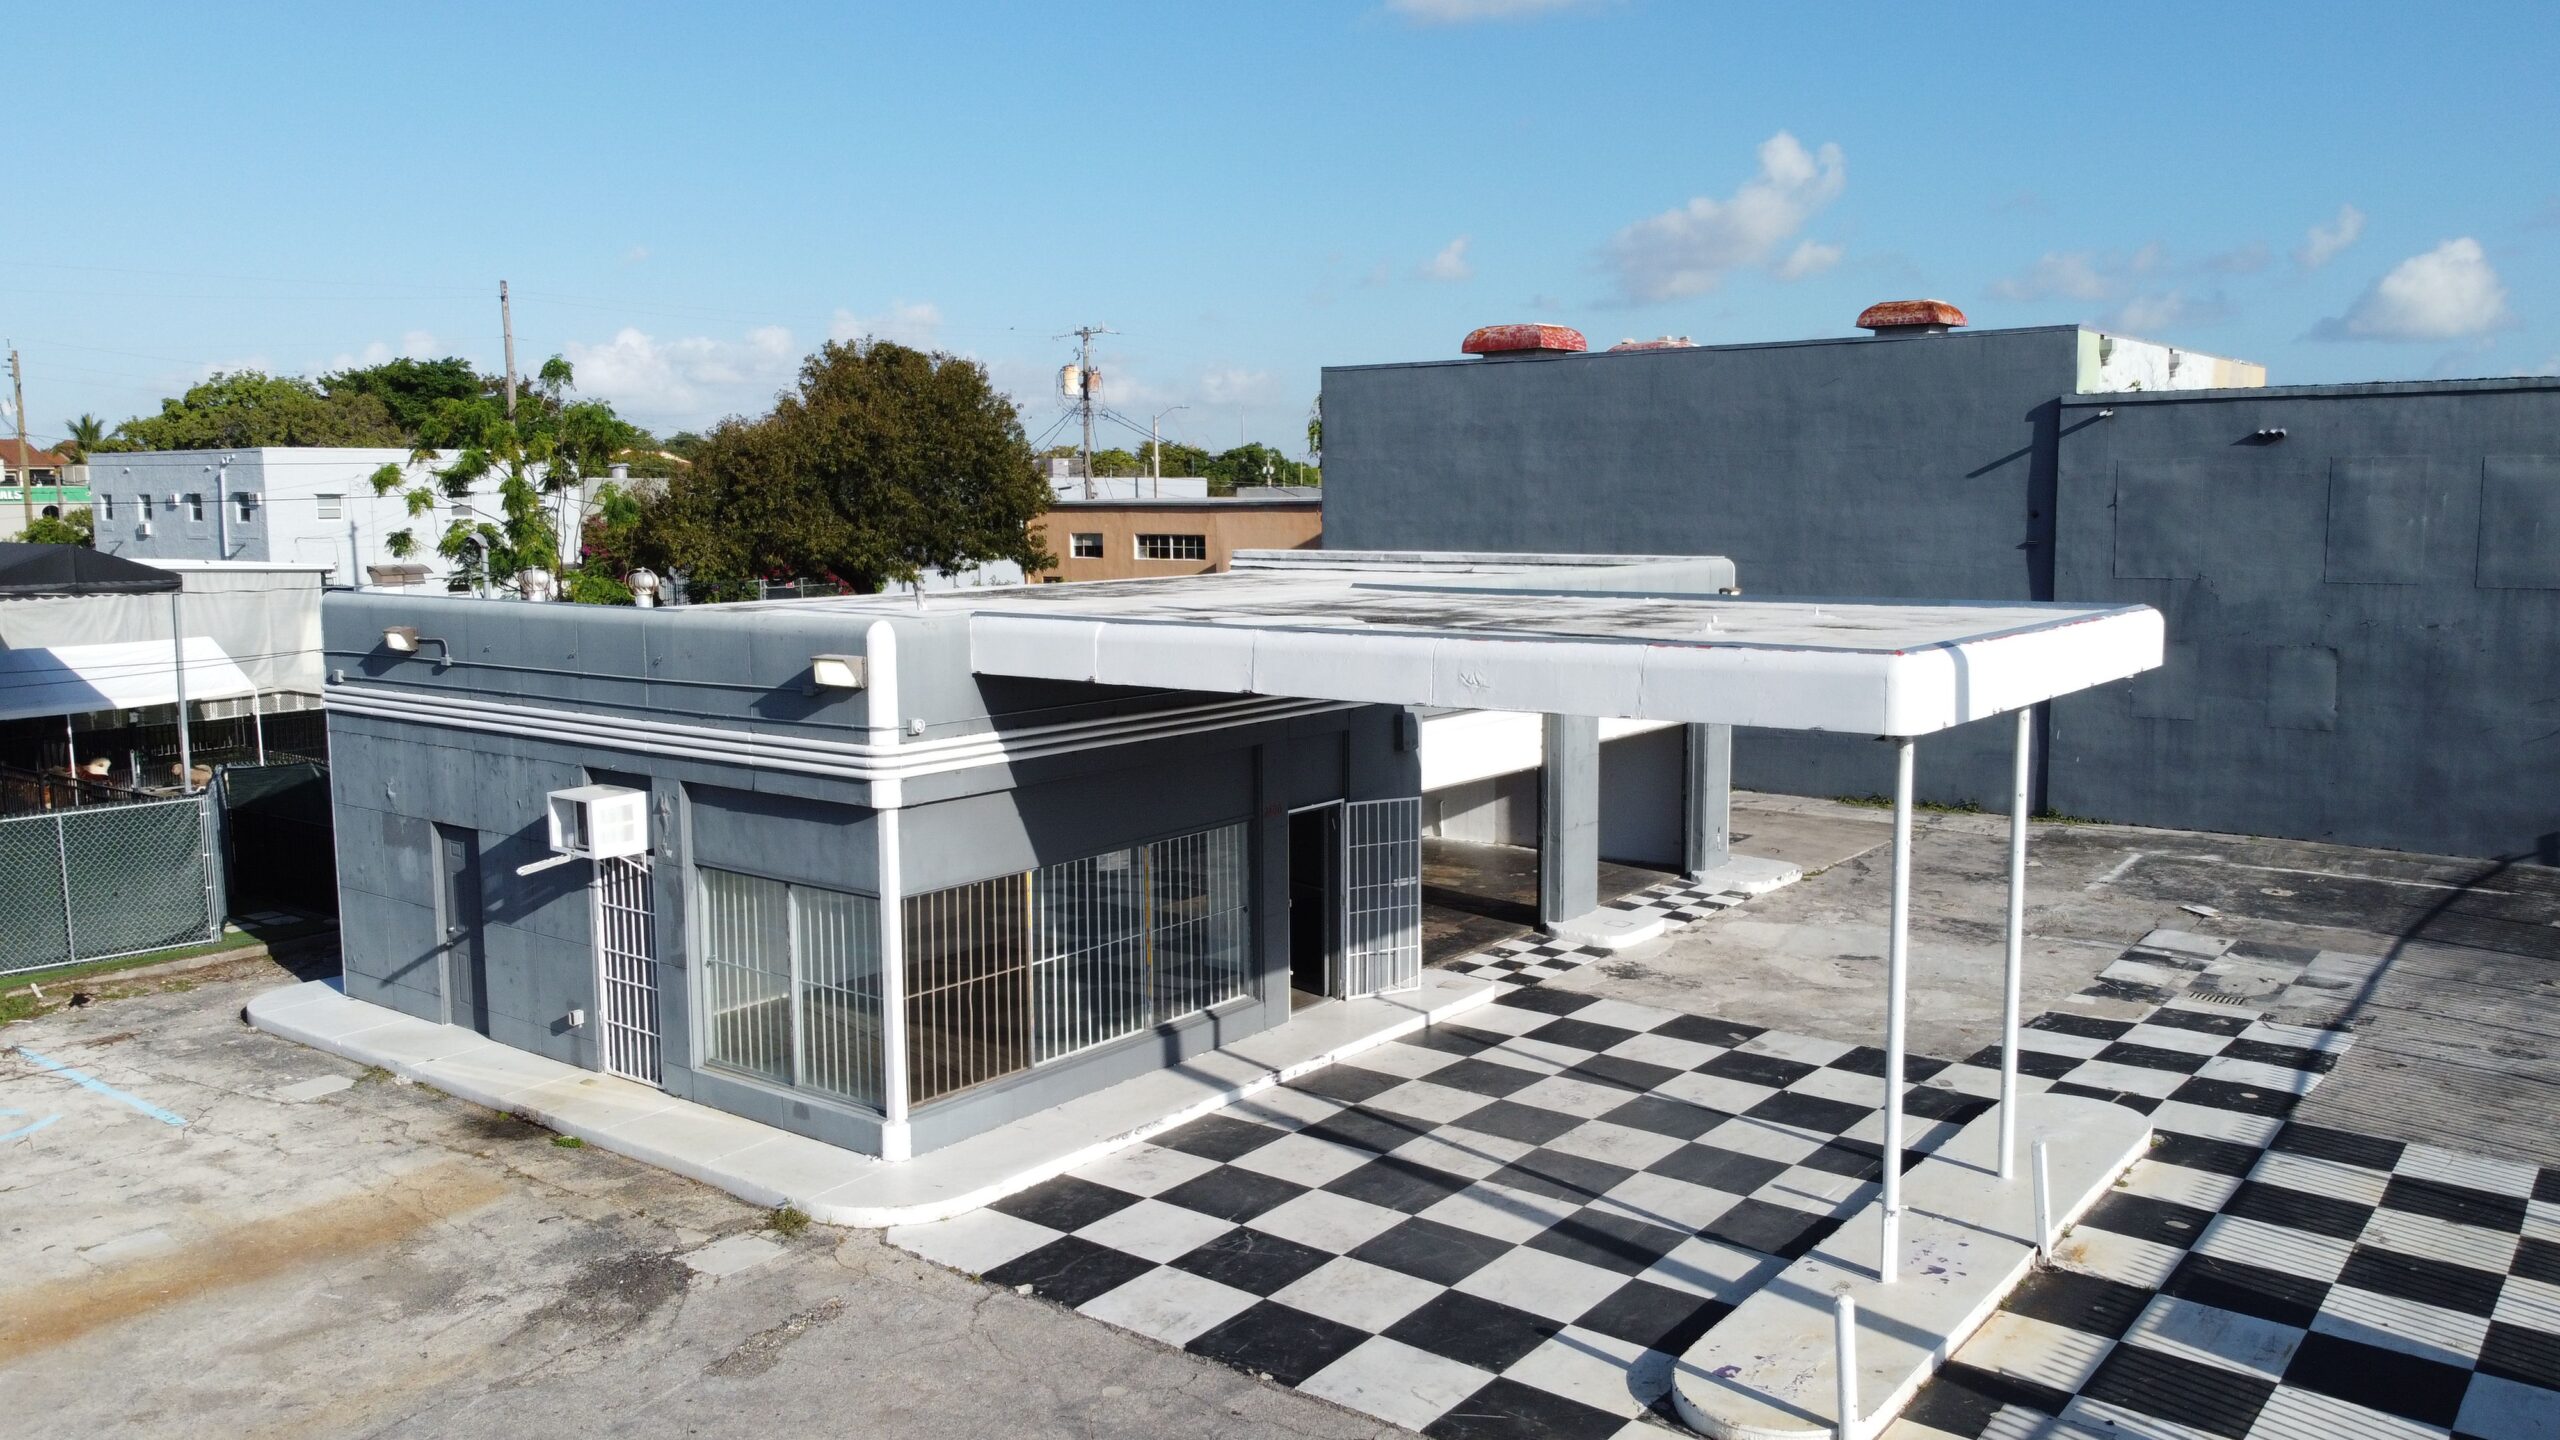 Development property in Miami Health District